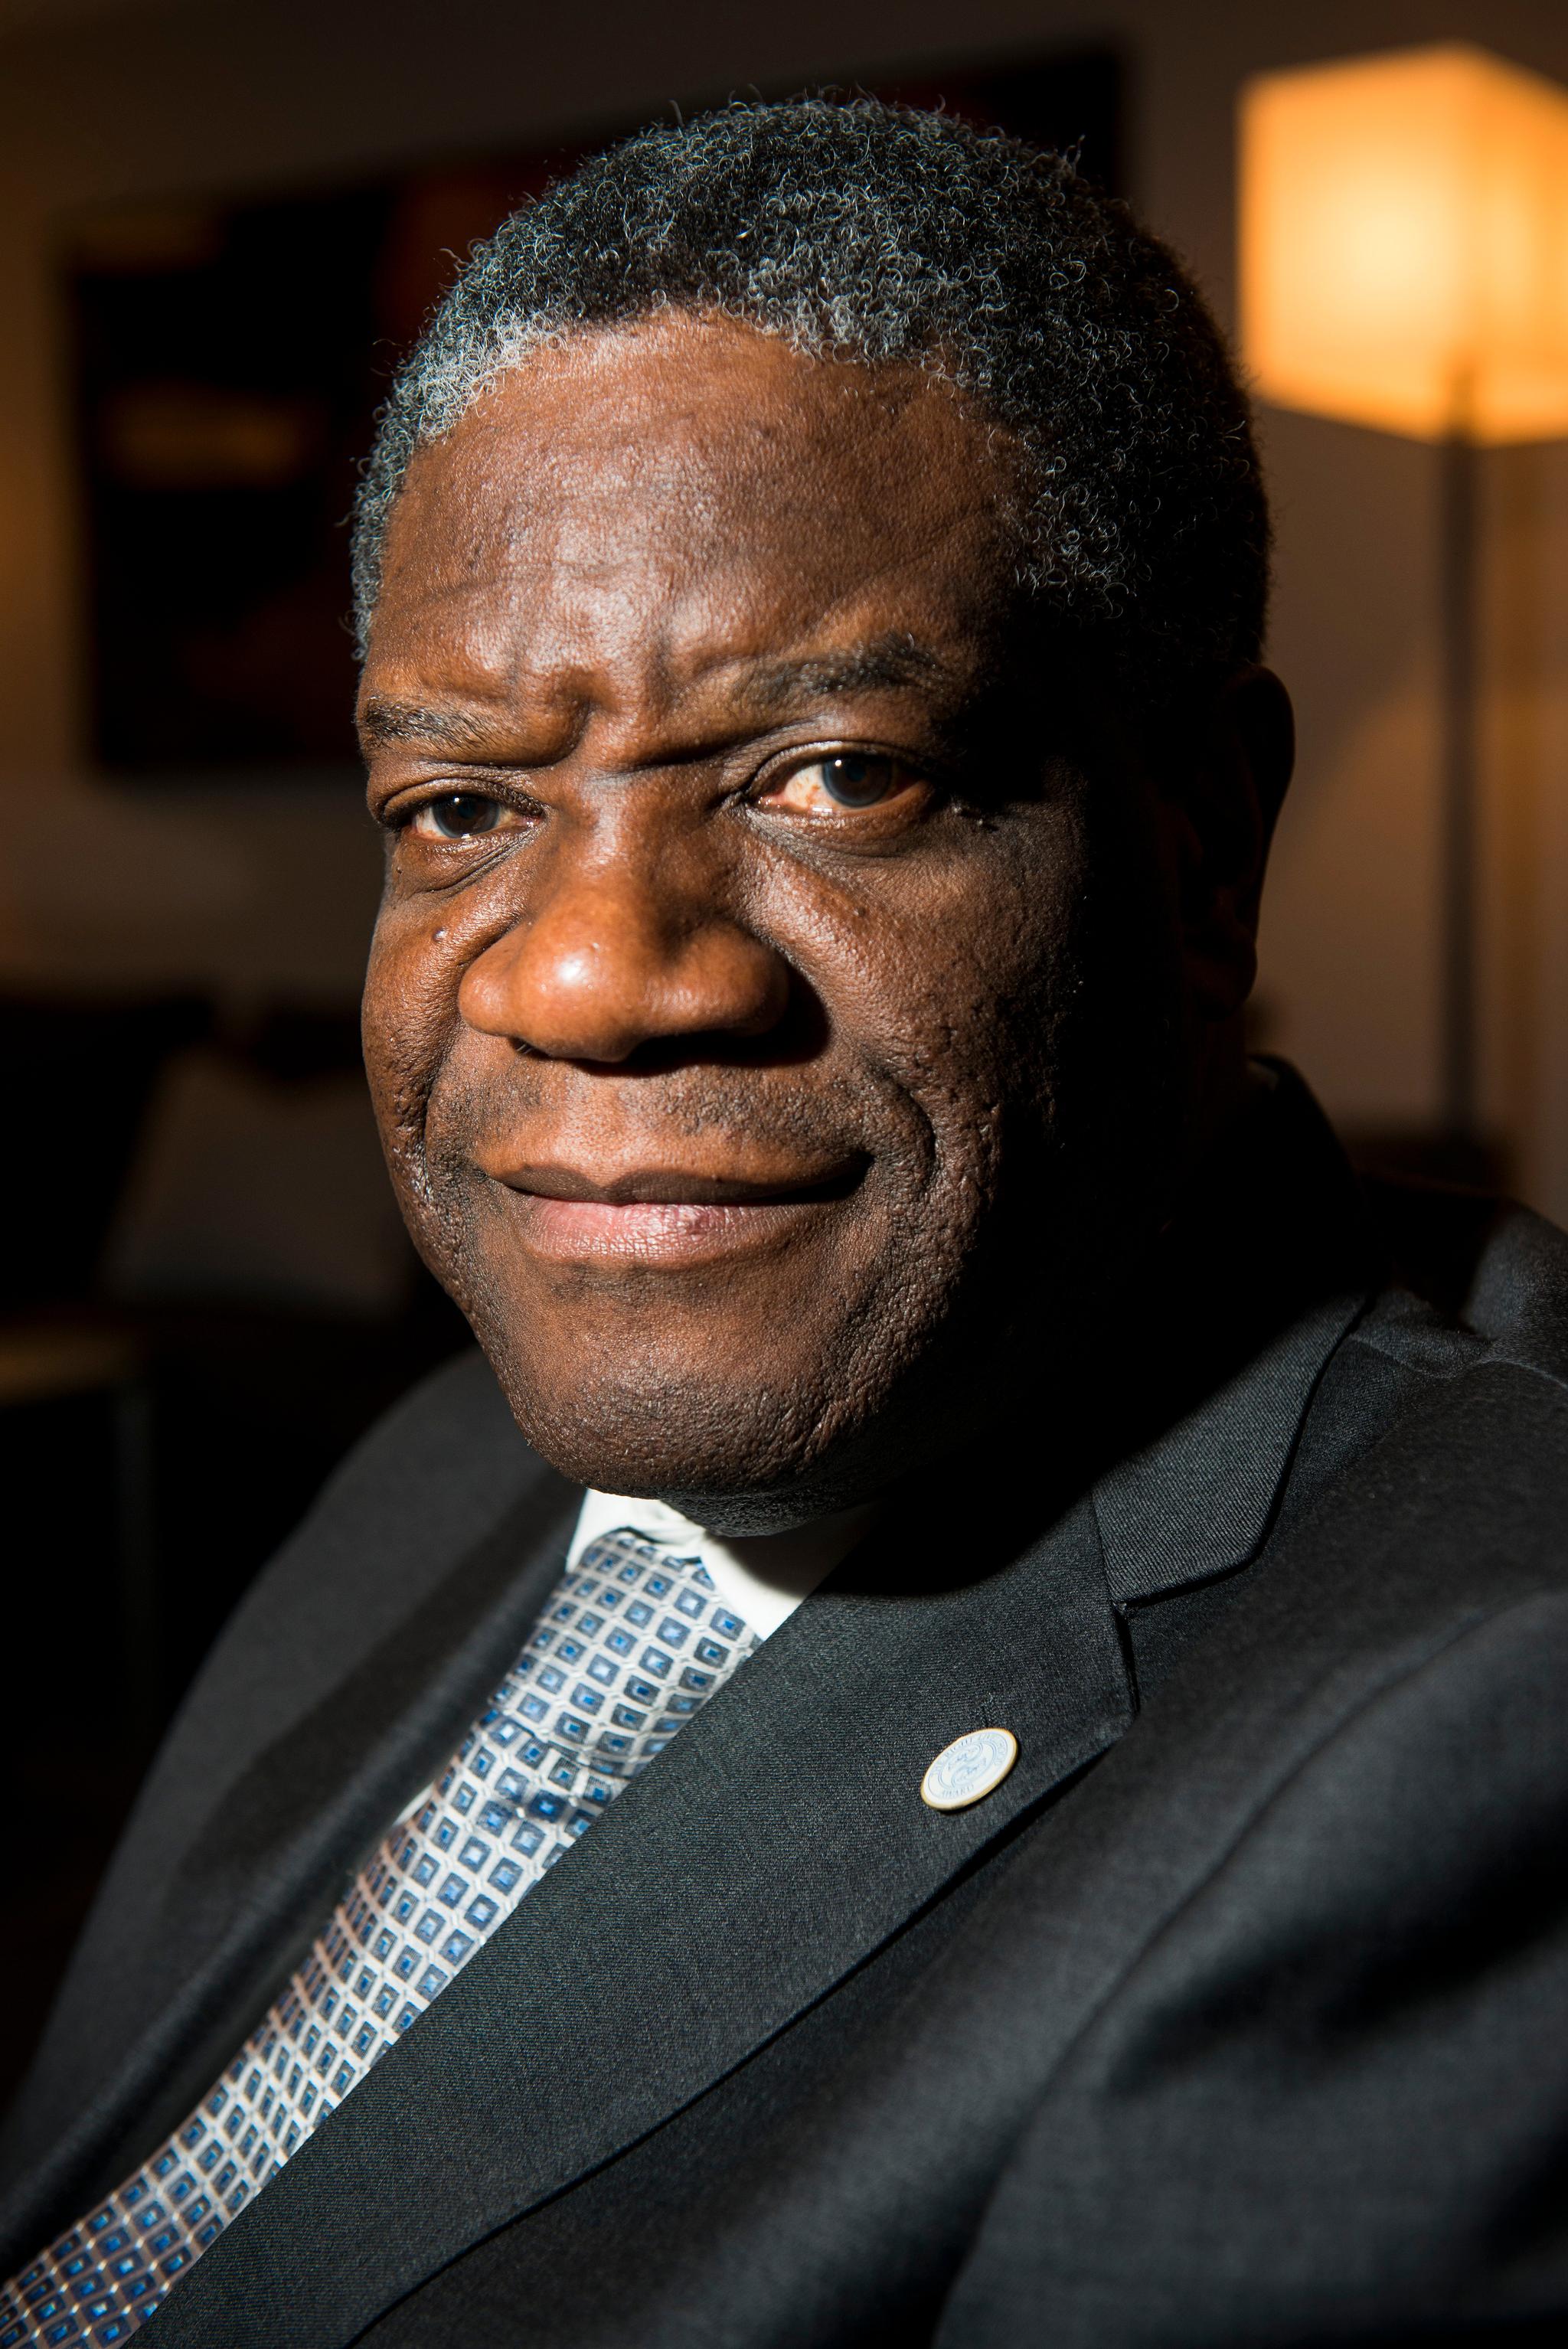  Denis Mukwege håper Noleprisen vil bidra til at voldtatte kvinner ikke blir glemt.